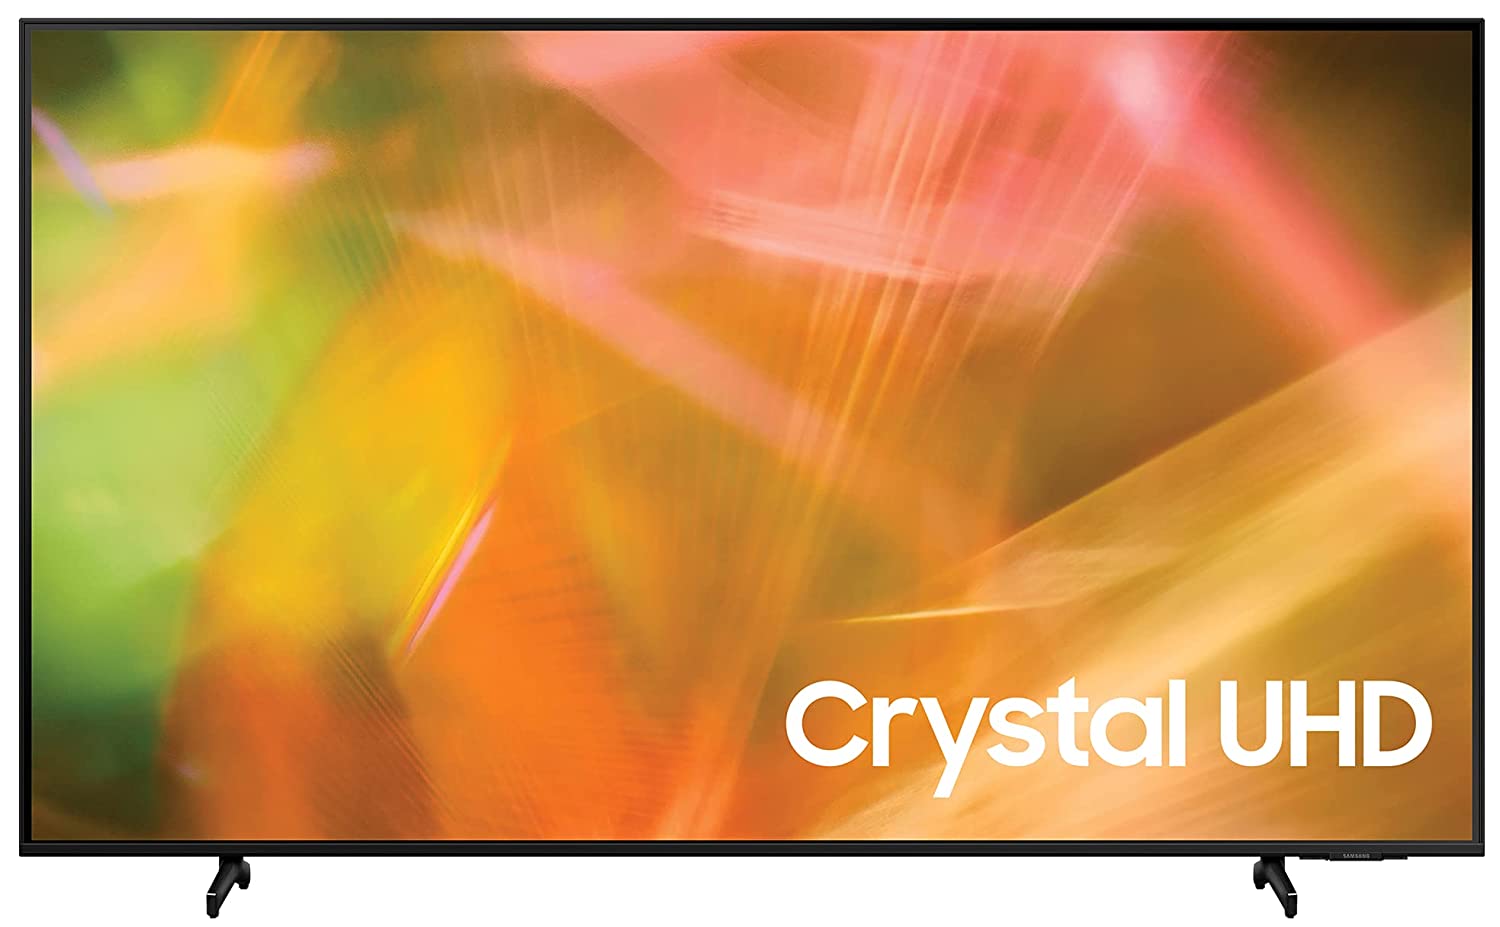 Samsung LED Crystal UHD,Smart TV 65″ AU8100